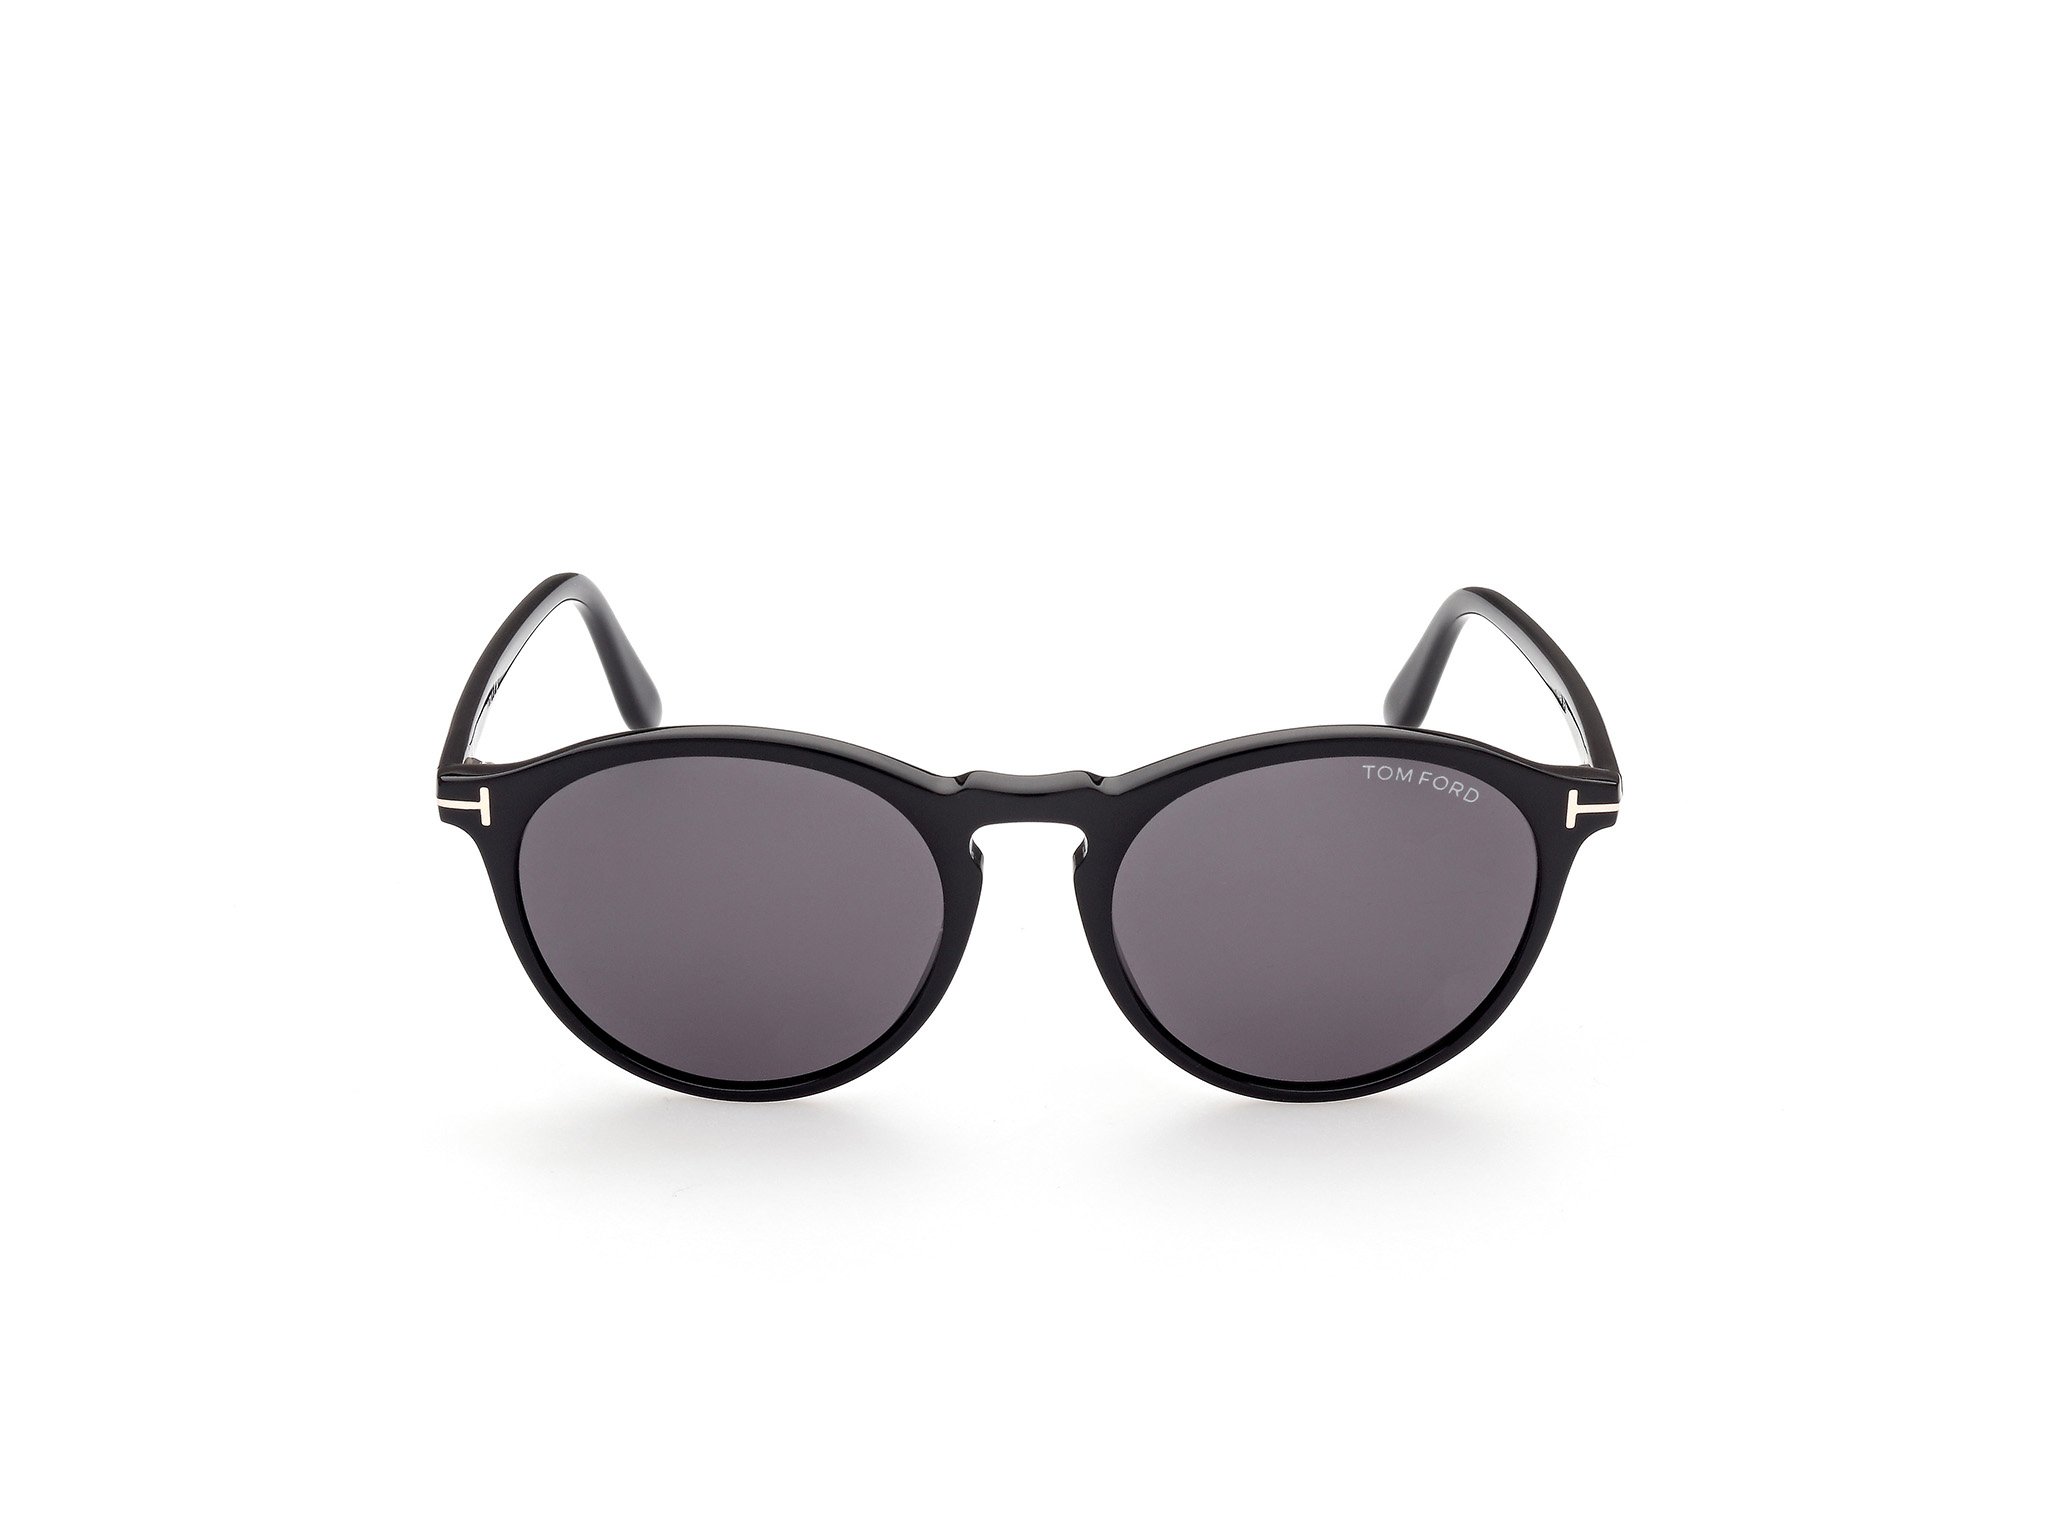 Das Bild zeigt die Sonnenbrille FT0904 der Marke Tom Ford in schwarz von vorne.